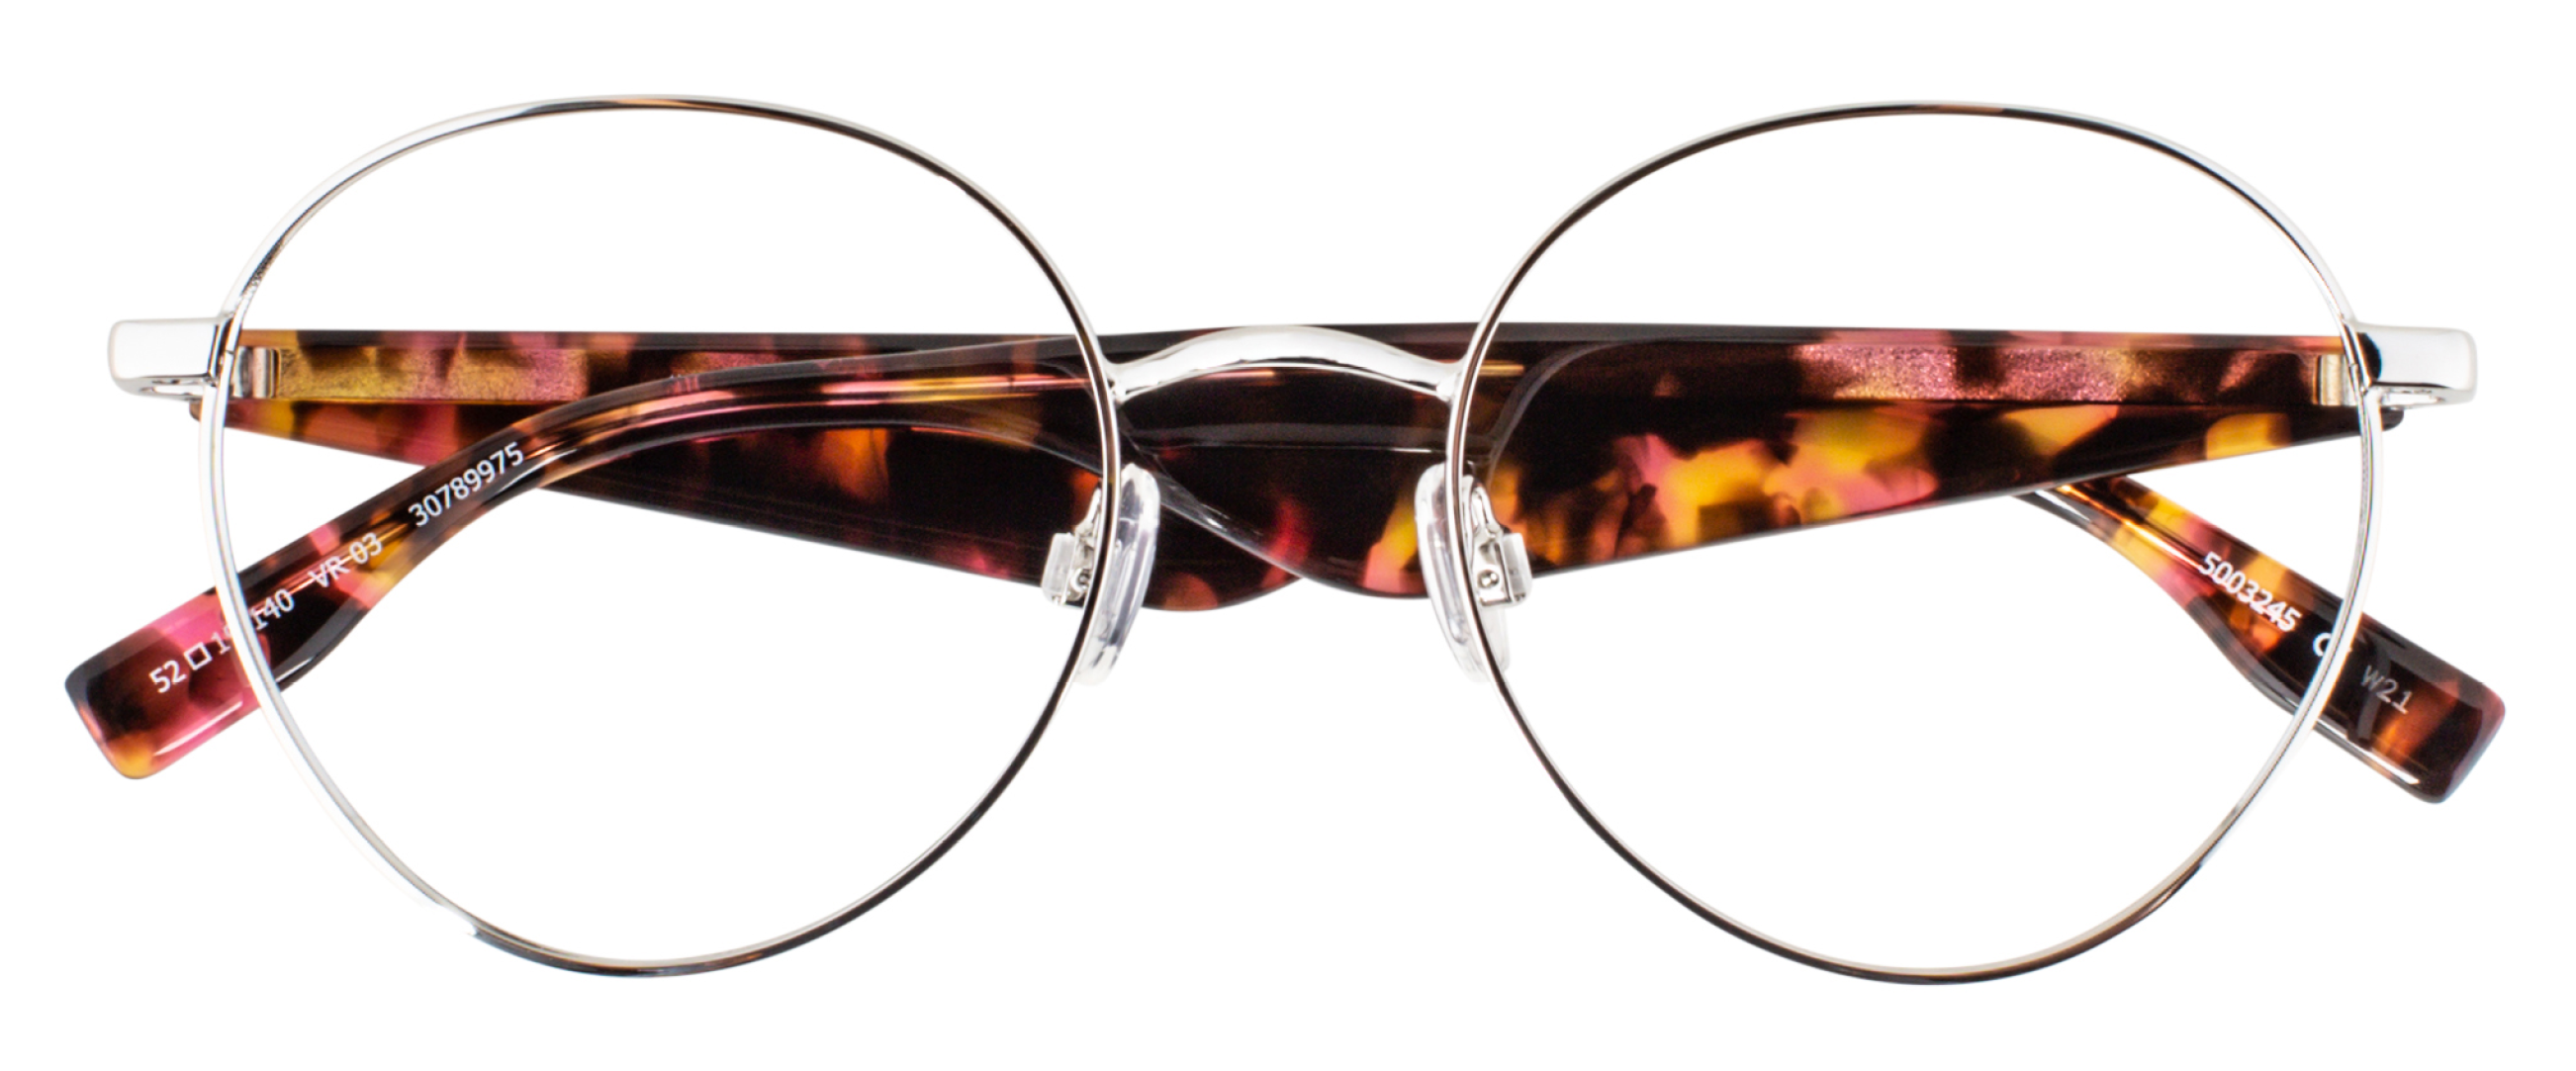 Viktor & Rolf – #LoveGlasses